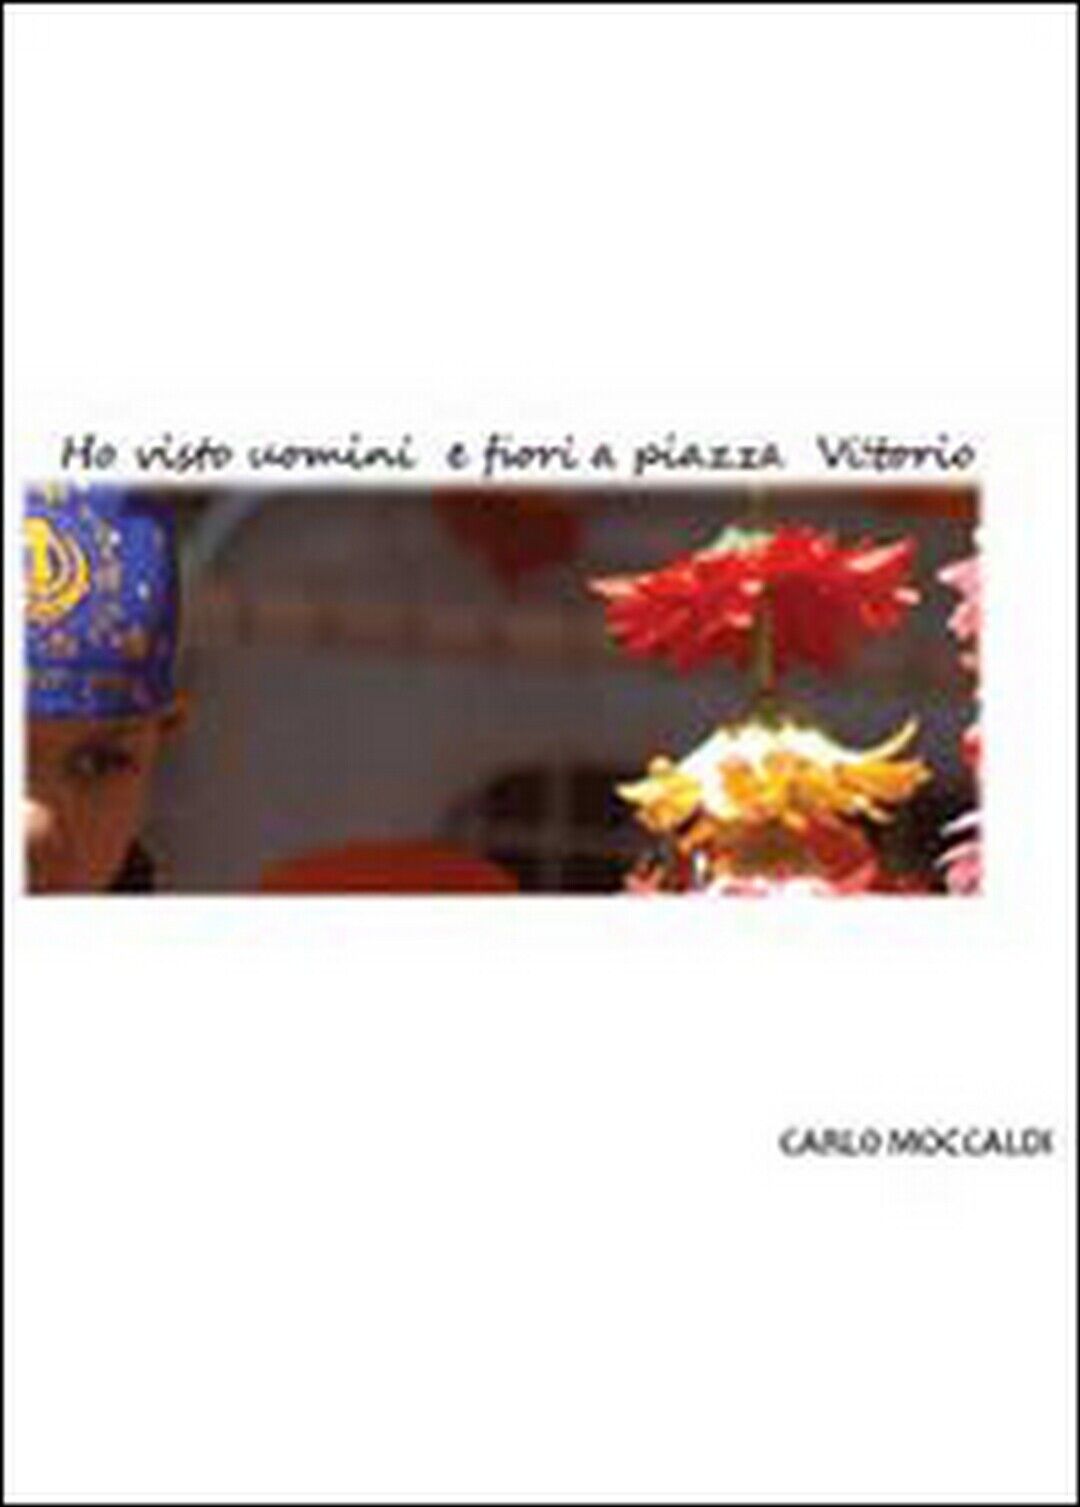 Ho visto uomini e fiori a piazza Vittorio, Carlo Moccaldi,  2013,  Youcanprint libro usato